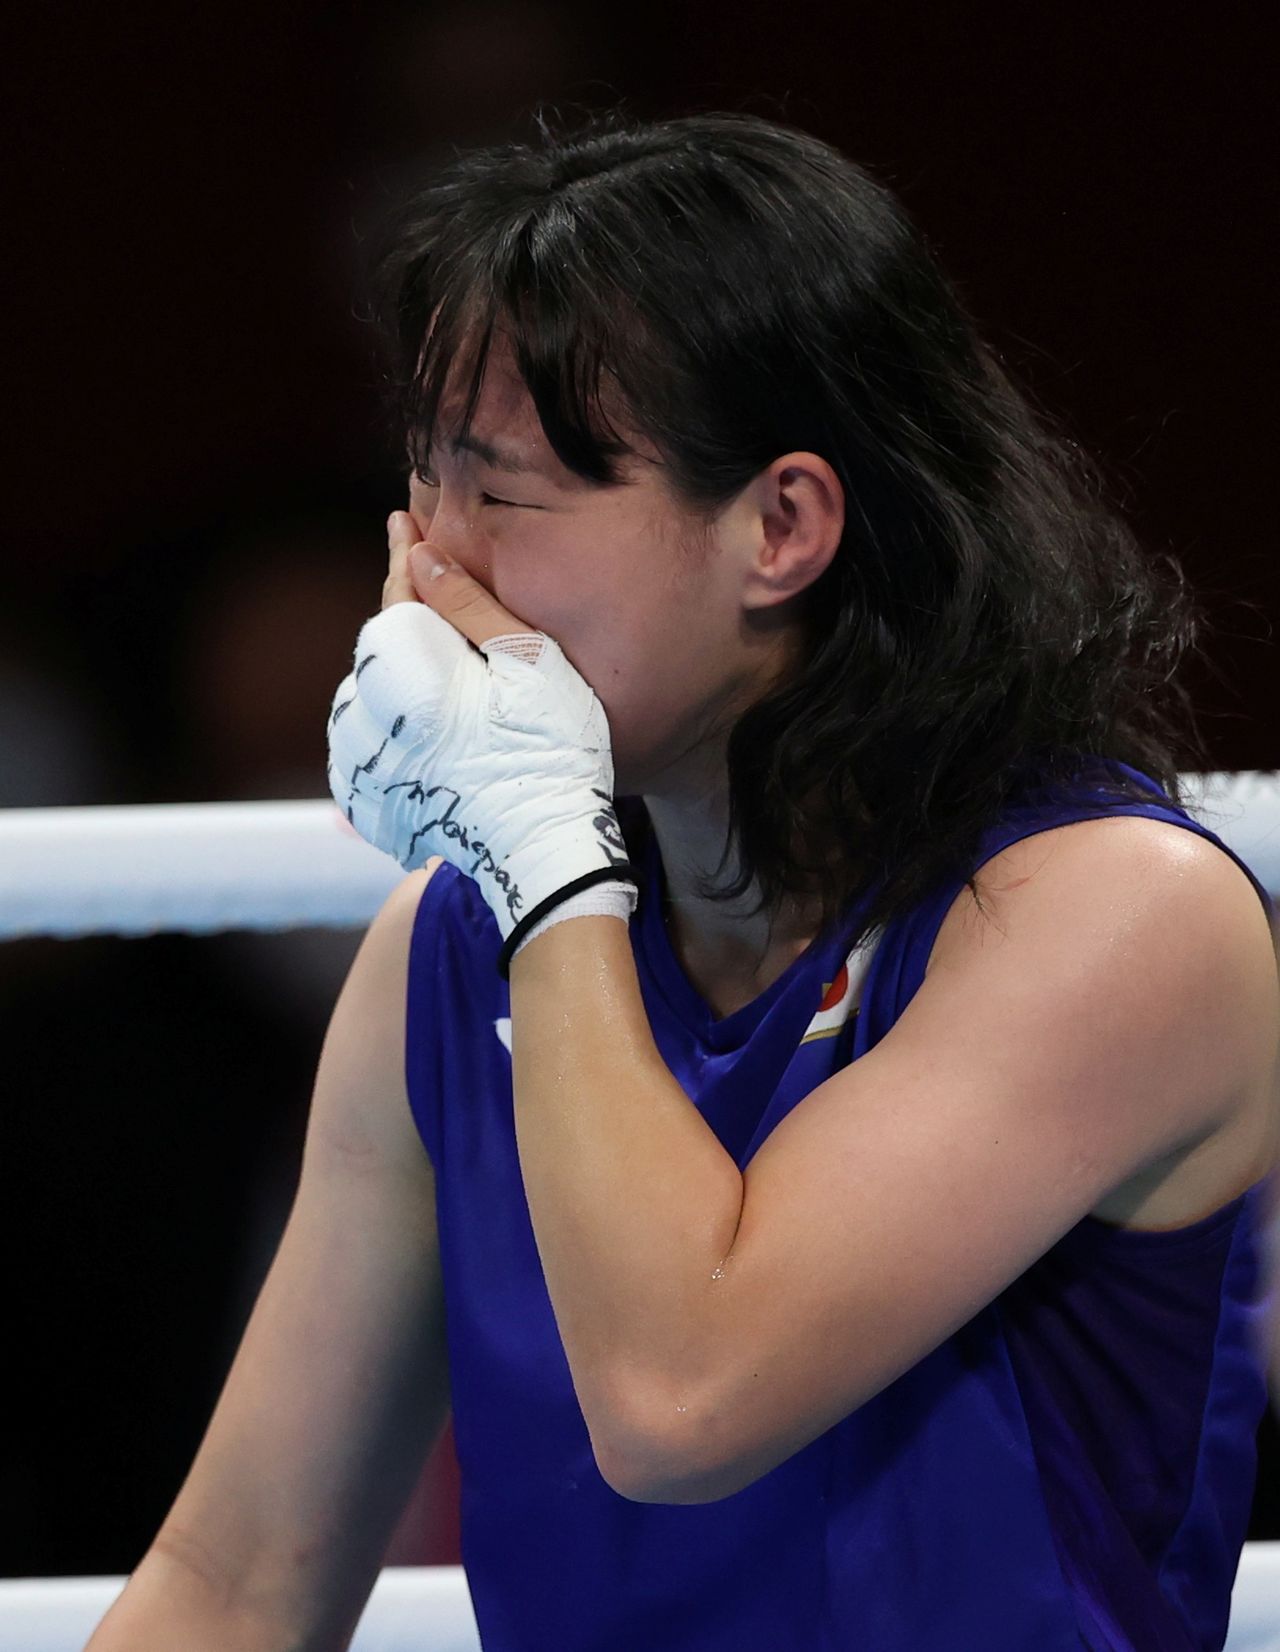 اليابانية سينا إيري تبكي بعد فوزها بذهبية وزن الريشة في الملاكمة بأولمبياد طوكيو 2020 يوم الثلاثاء. تصوير: كارل ريسين - رويترز.